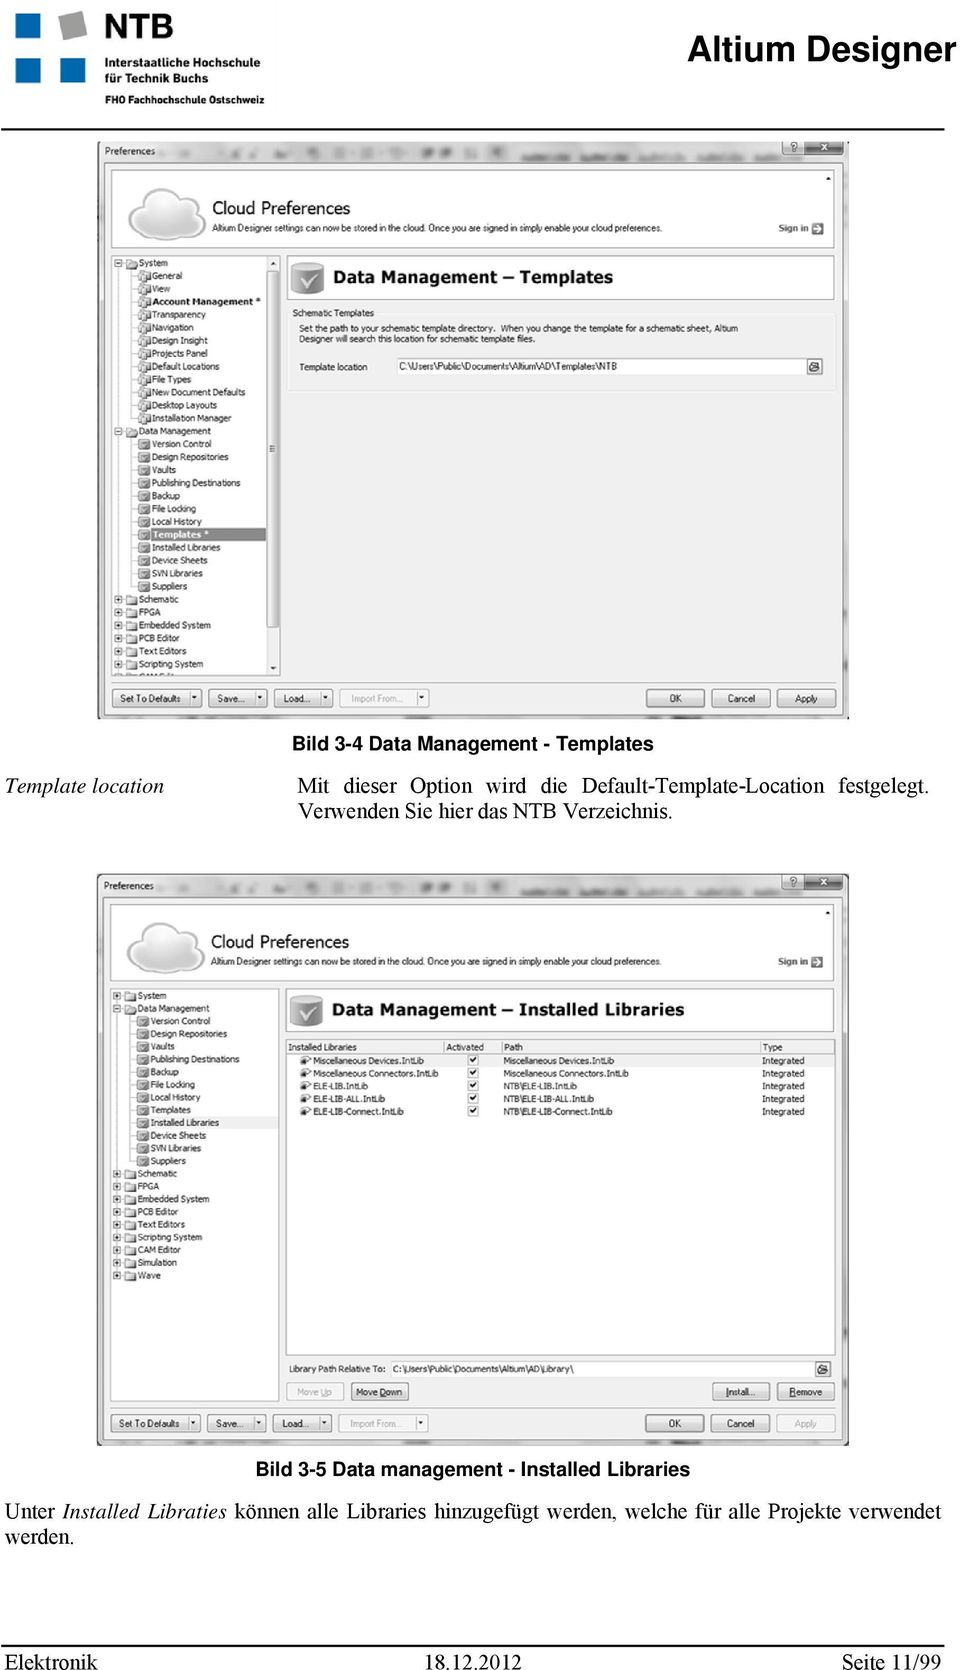 Kurzeinführung in den Altium Designer   PDF Kostenfreier Download